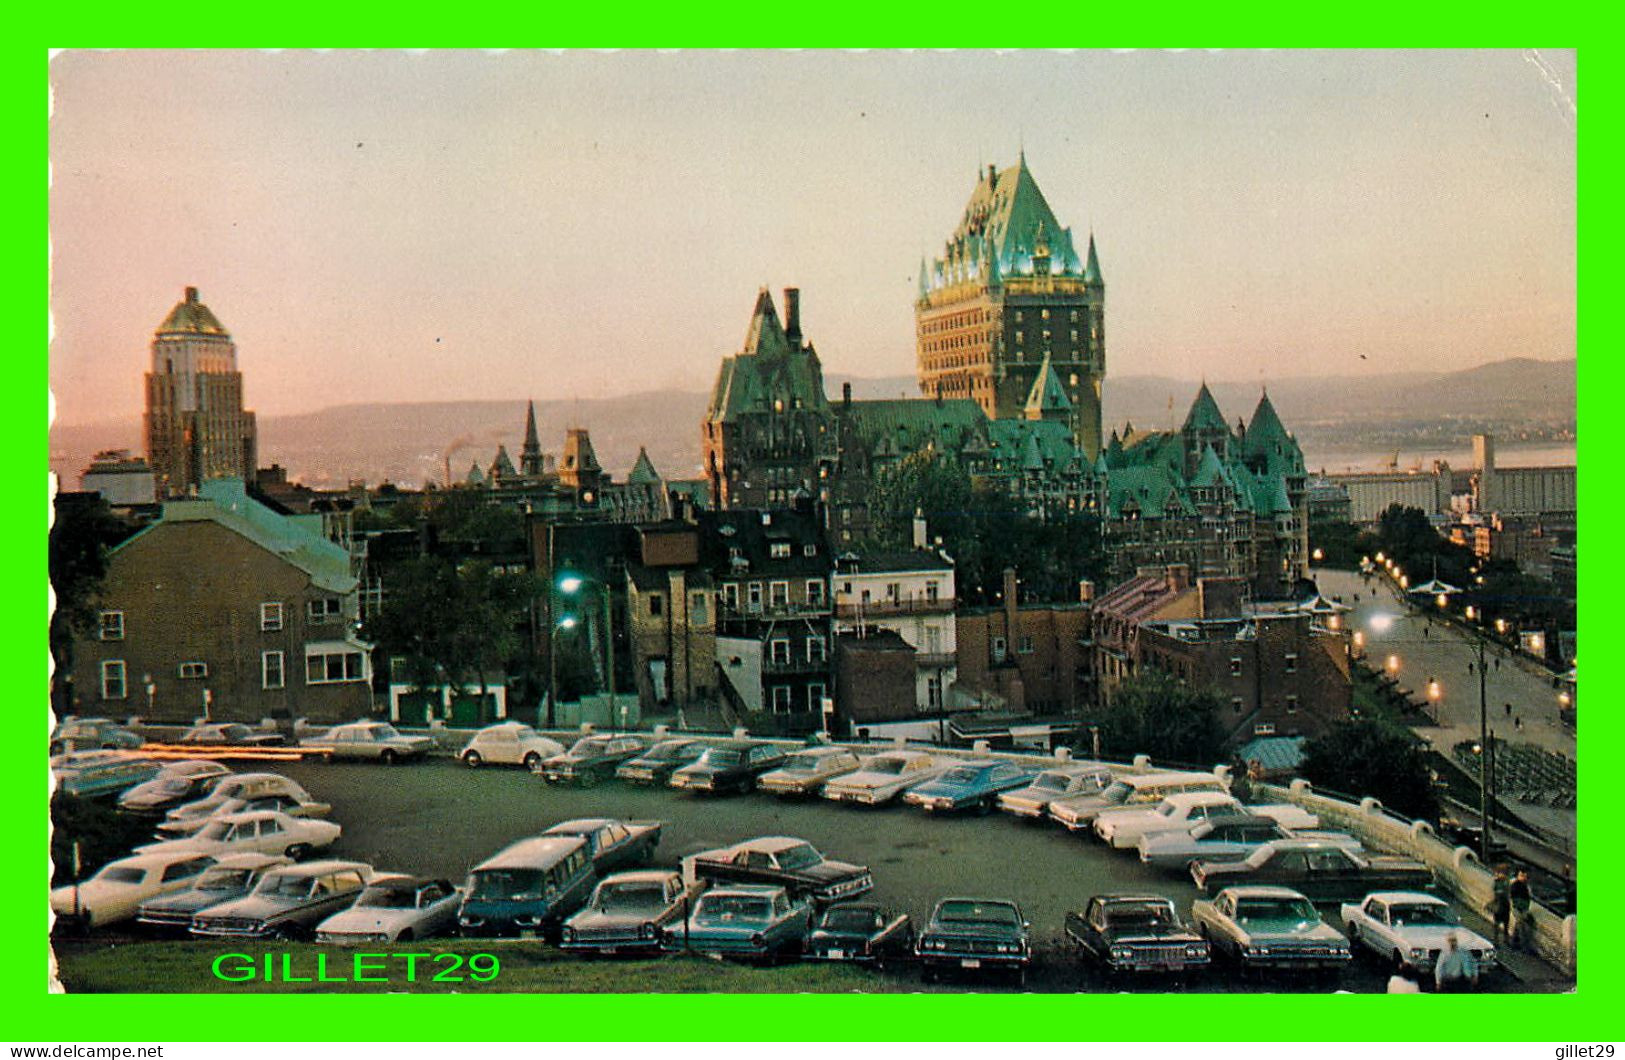 QUÉBEC - VUE AU CRÉPUSCULE - ANIMÉE DE VIEILLE VOITURES - CIRCULÉE EN 1974 - EMIL KIROUAC - LAVAL COUET - - Québec - La Cité